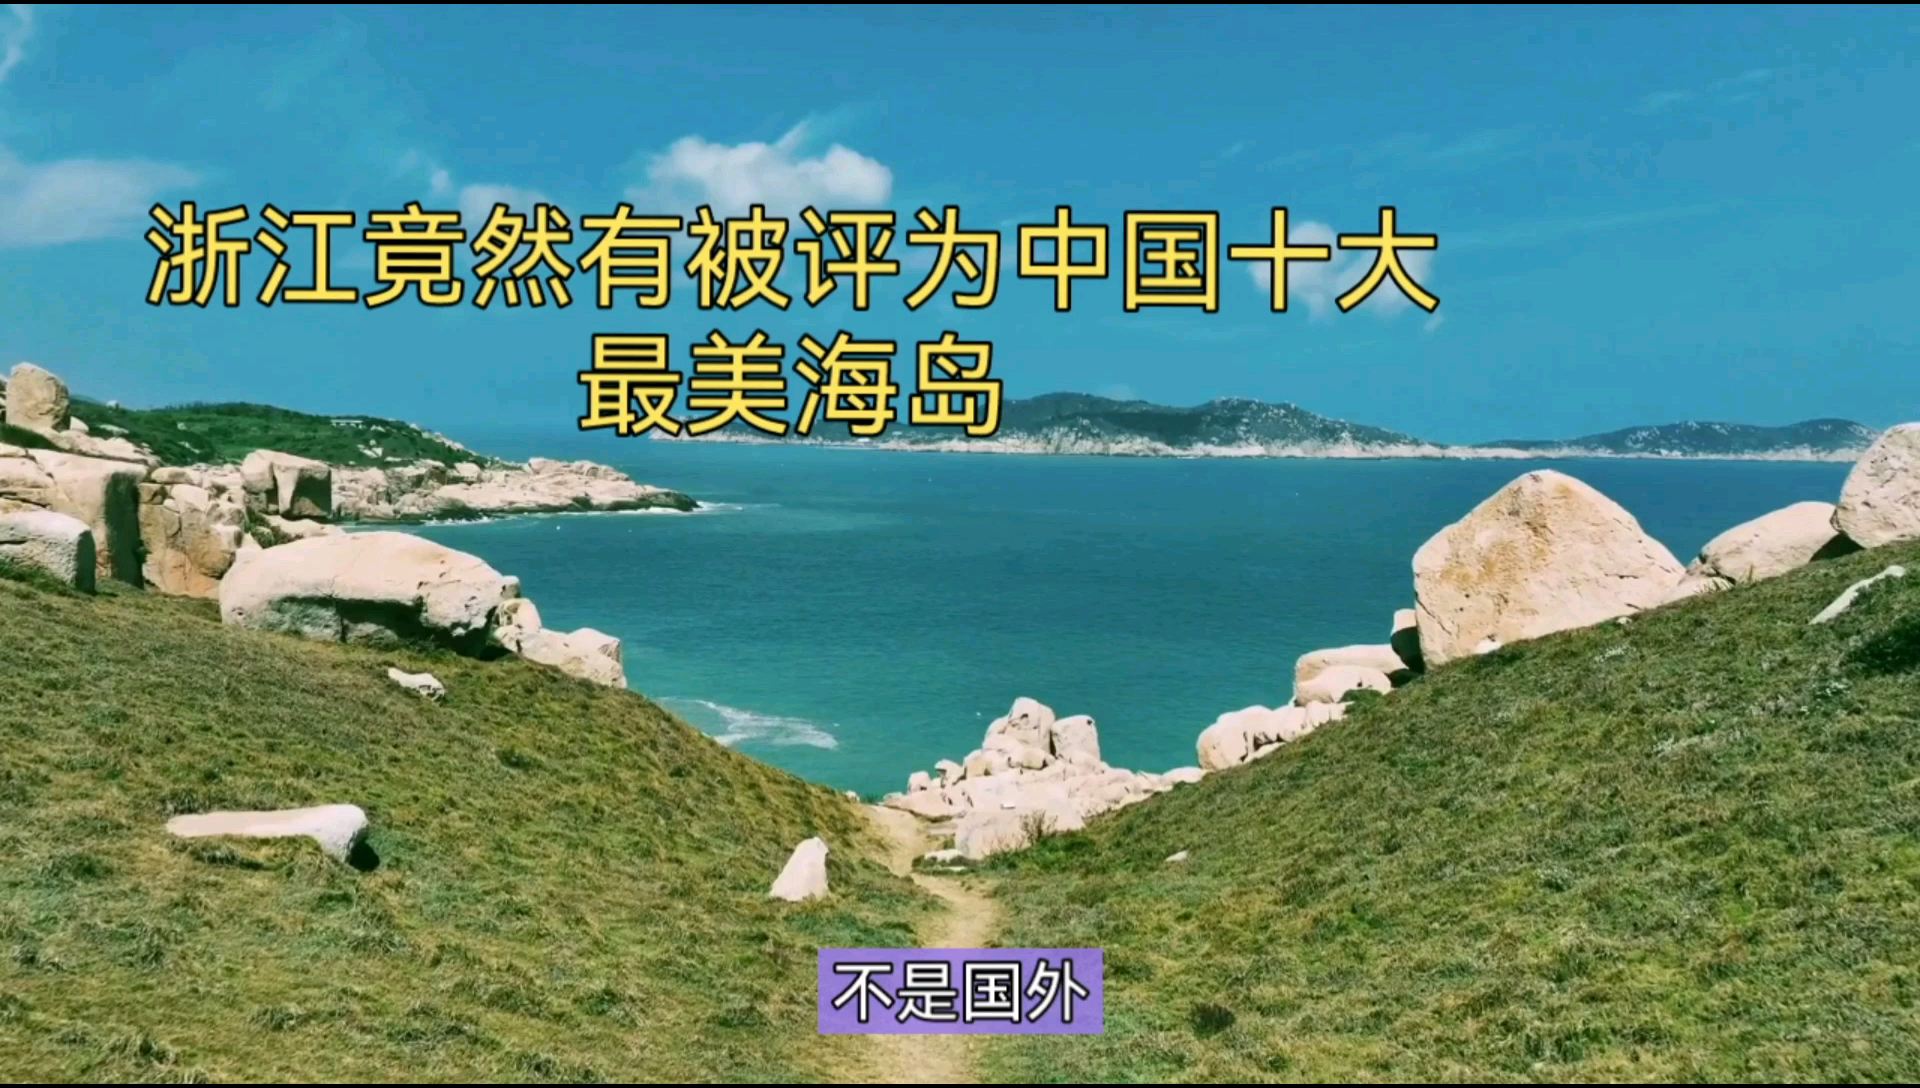 浙江竟然有被评为中国十大最美海岛